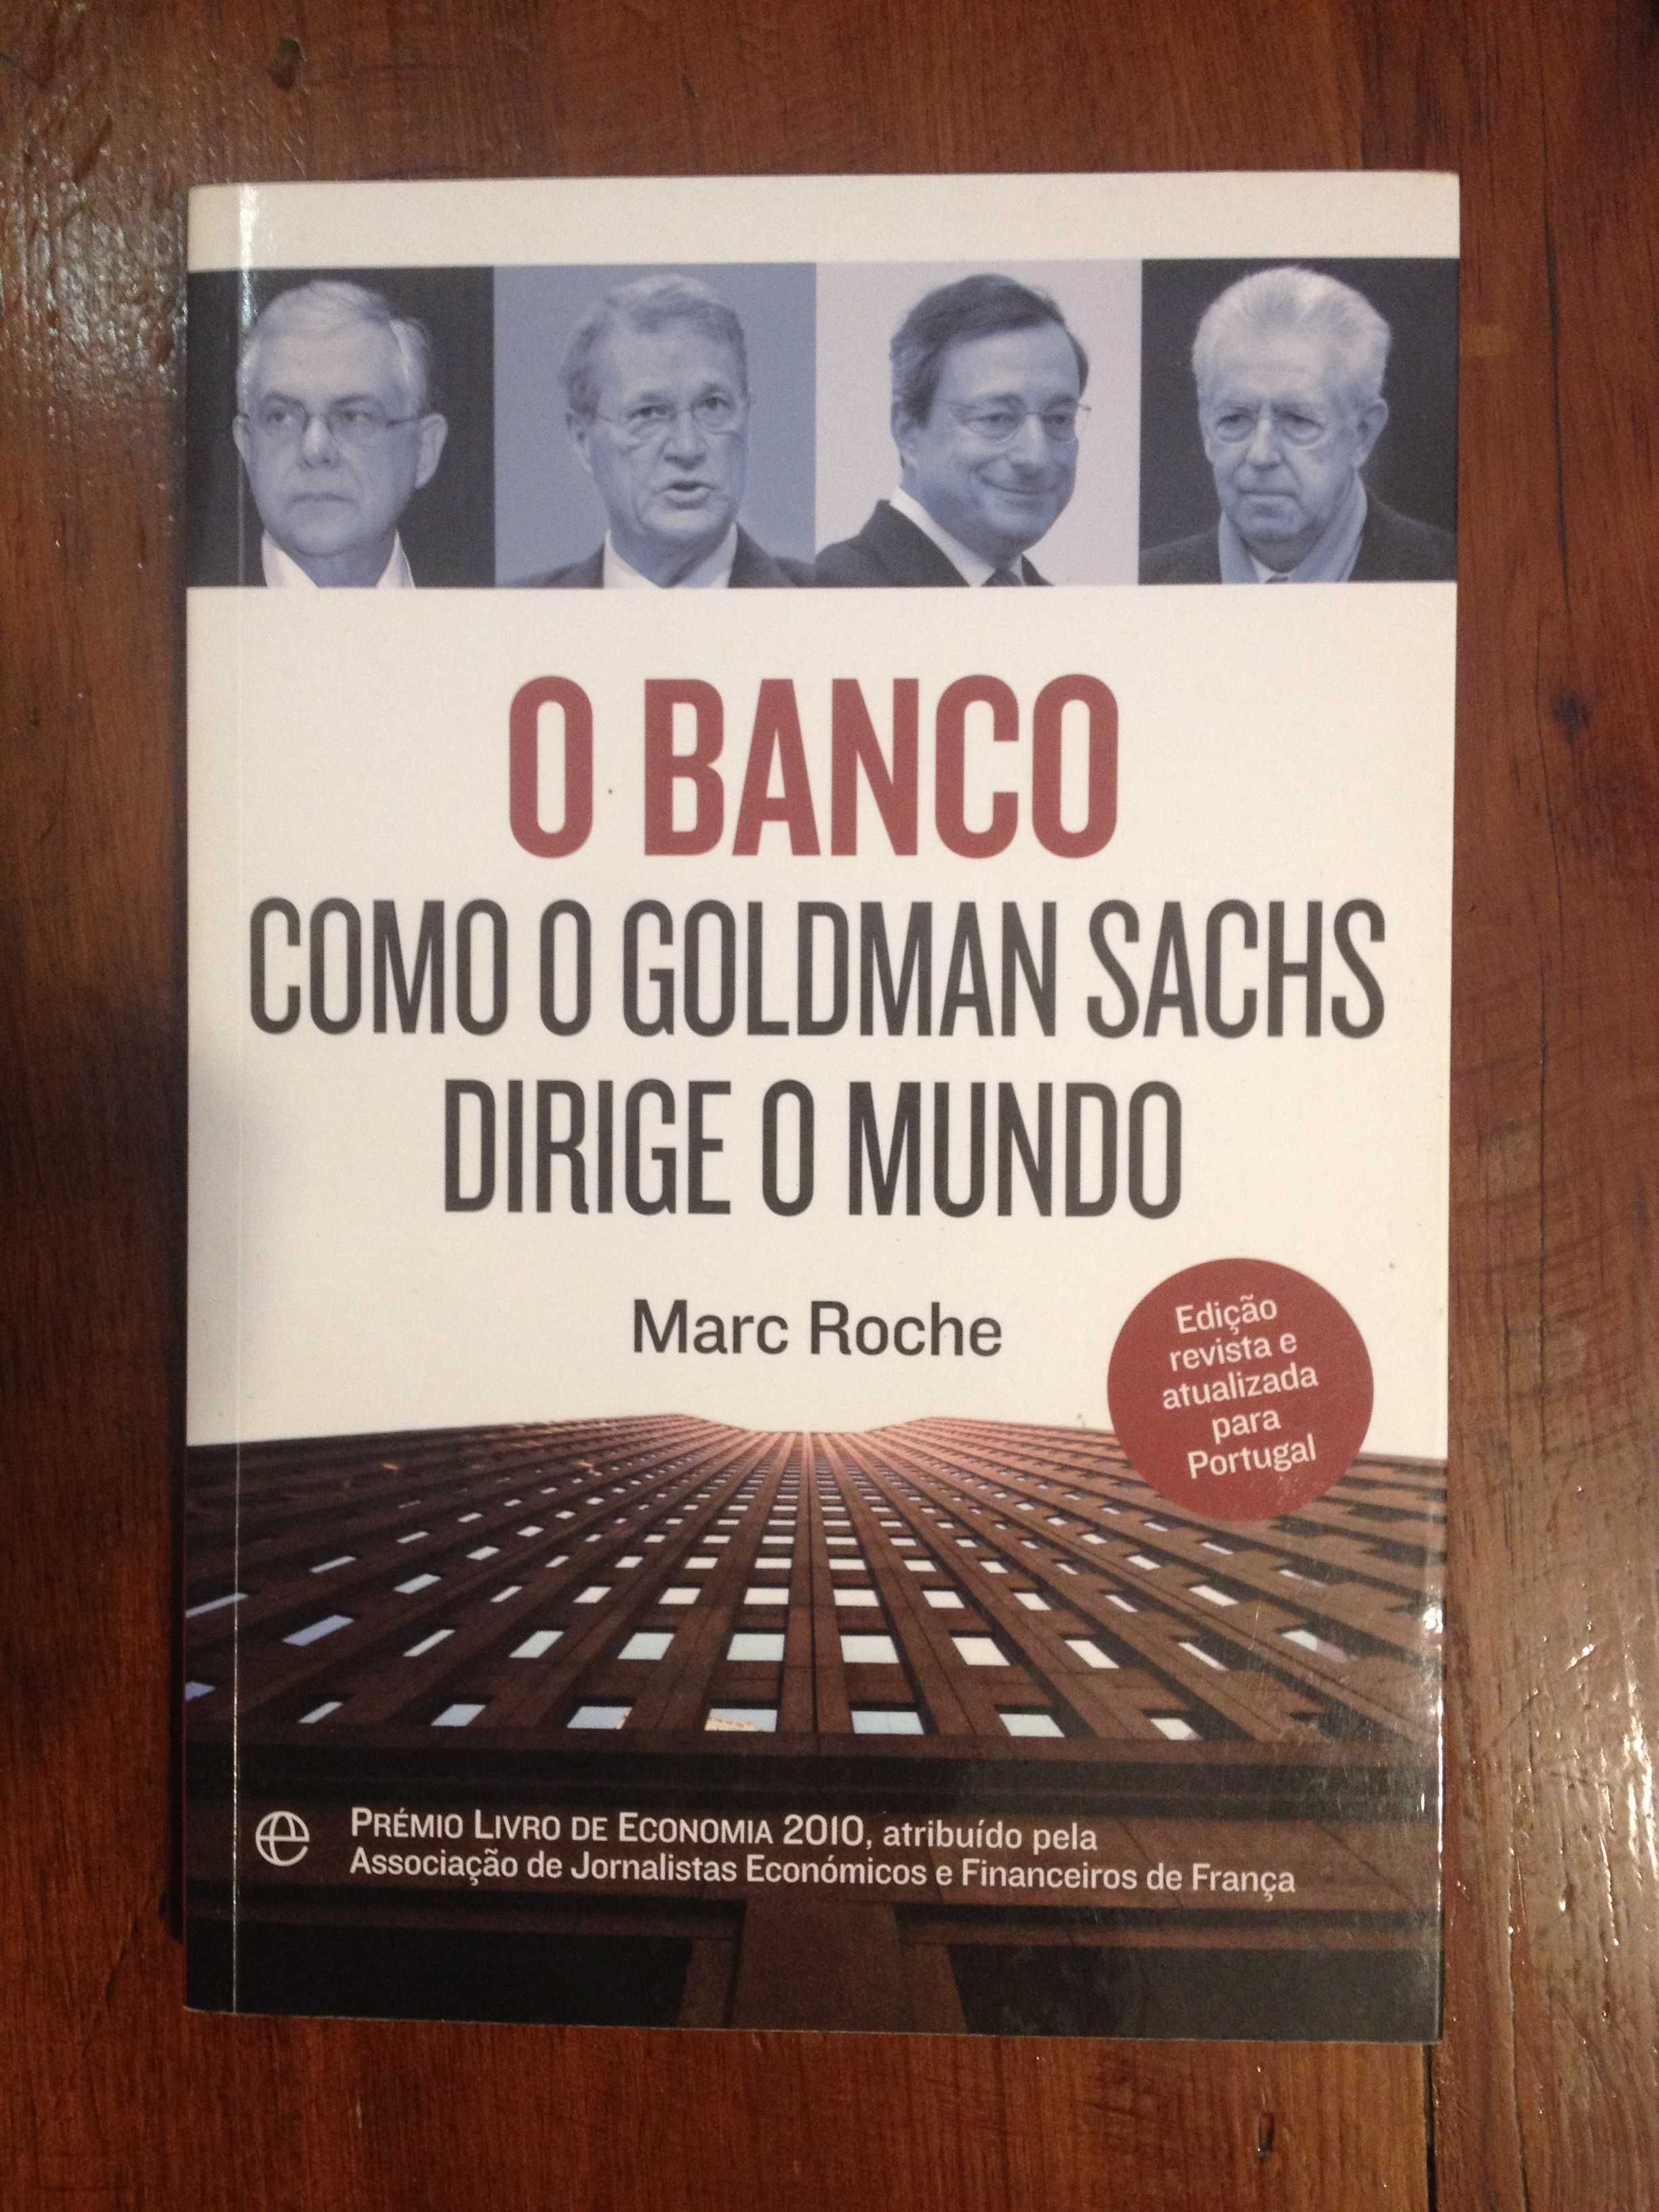 Marc Roche - O Banco, Como o Goldman Sachs dirige o mundo